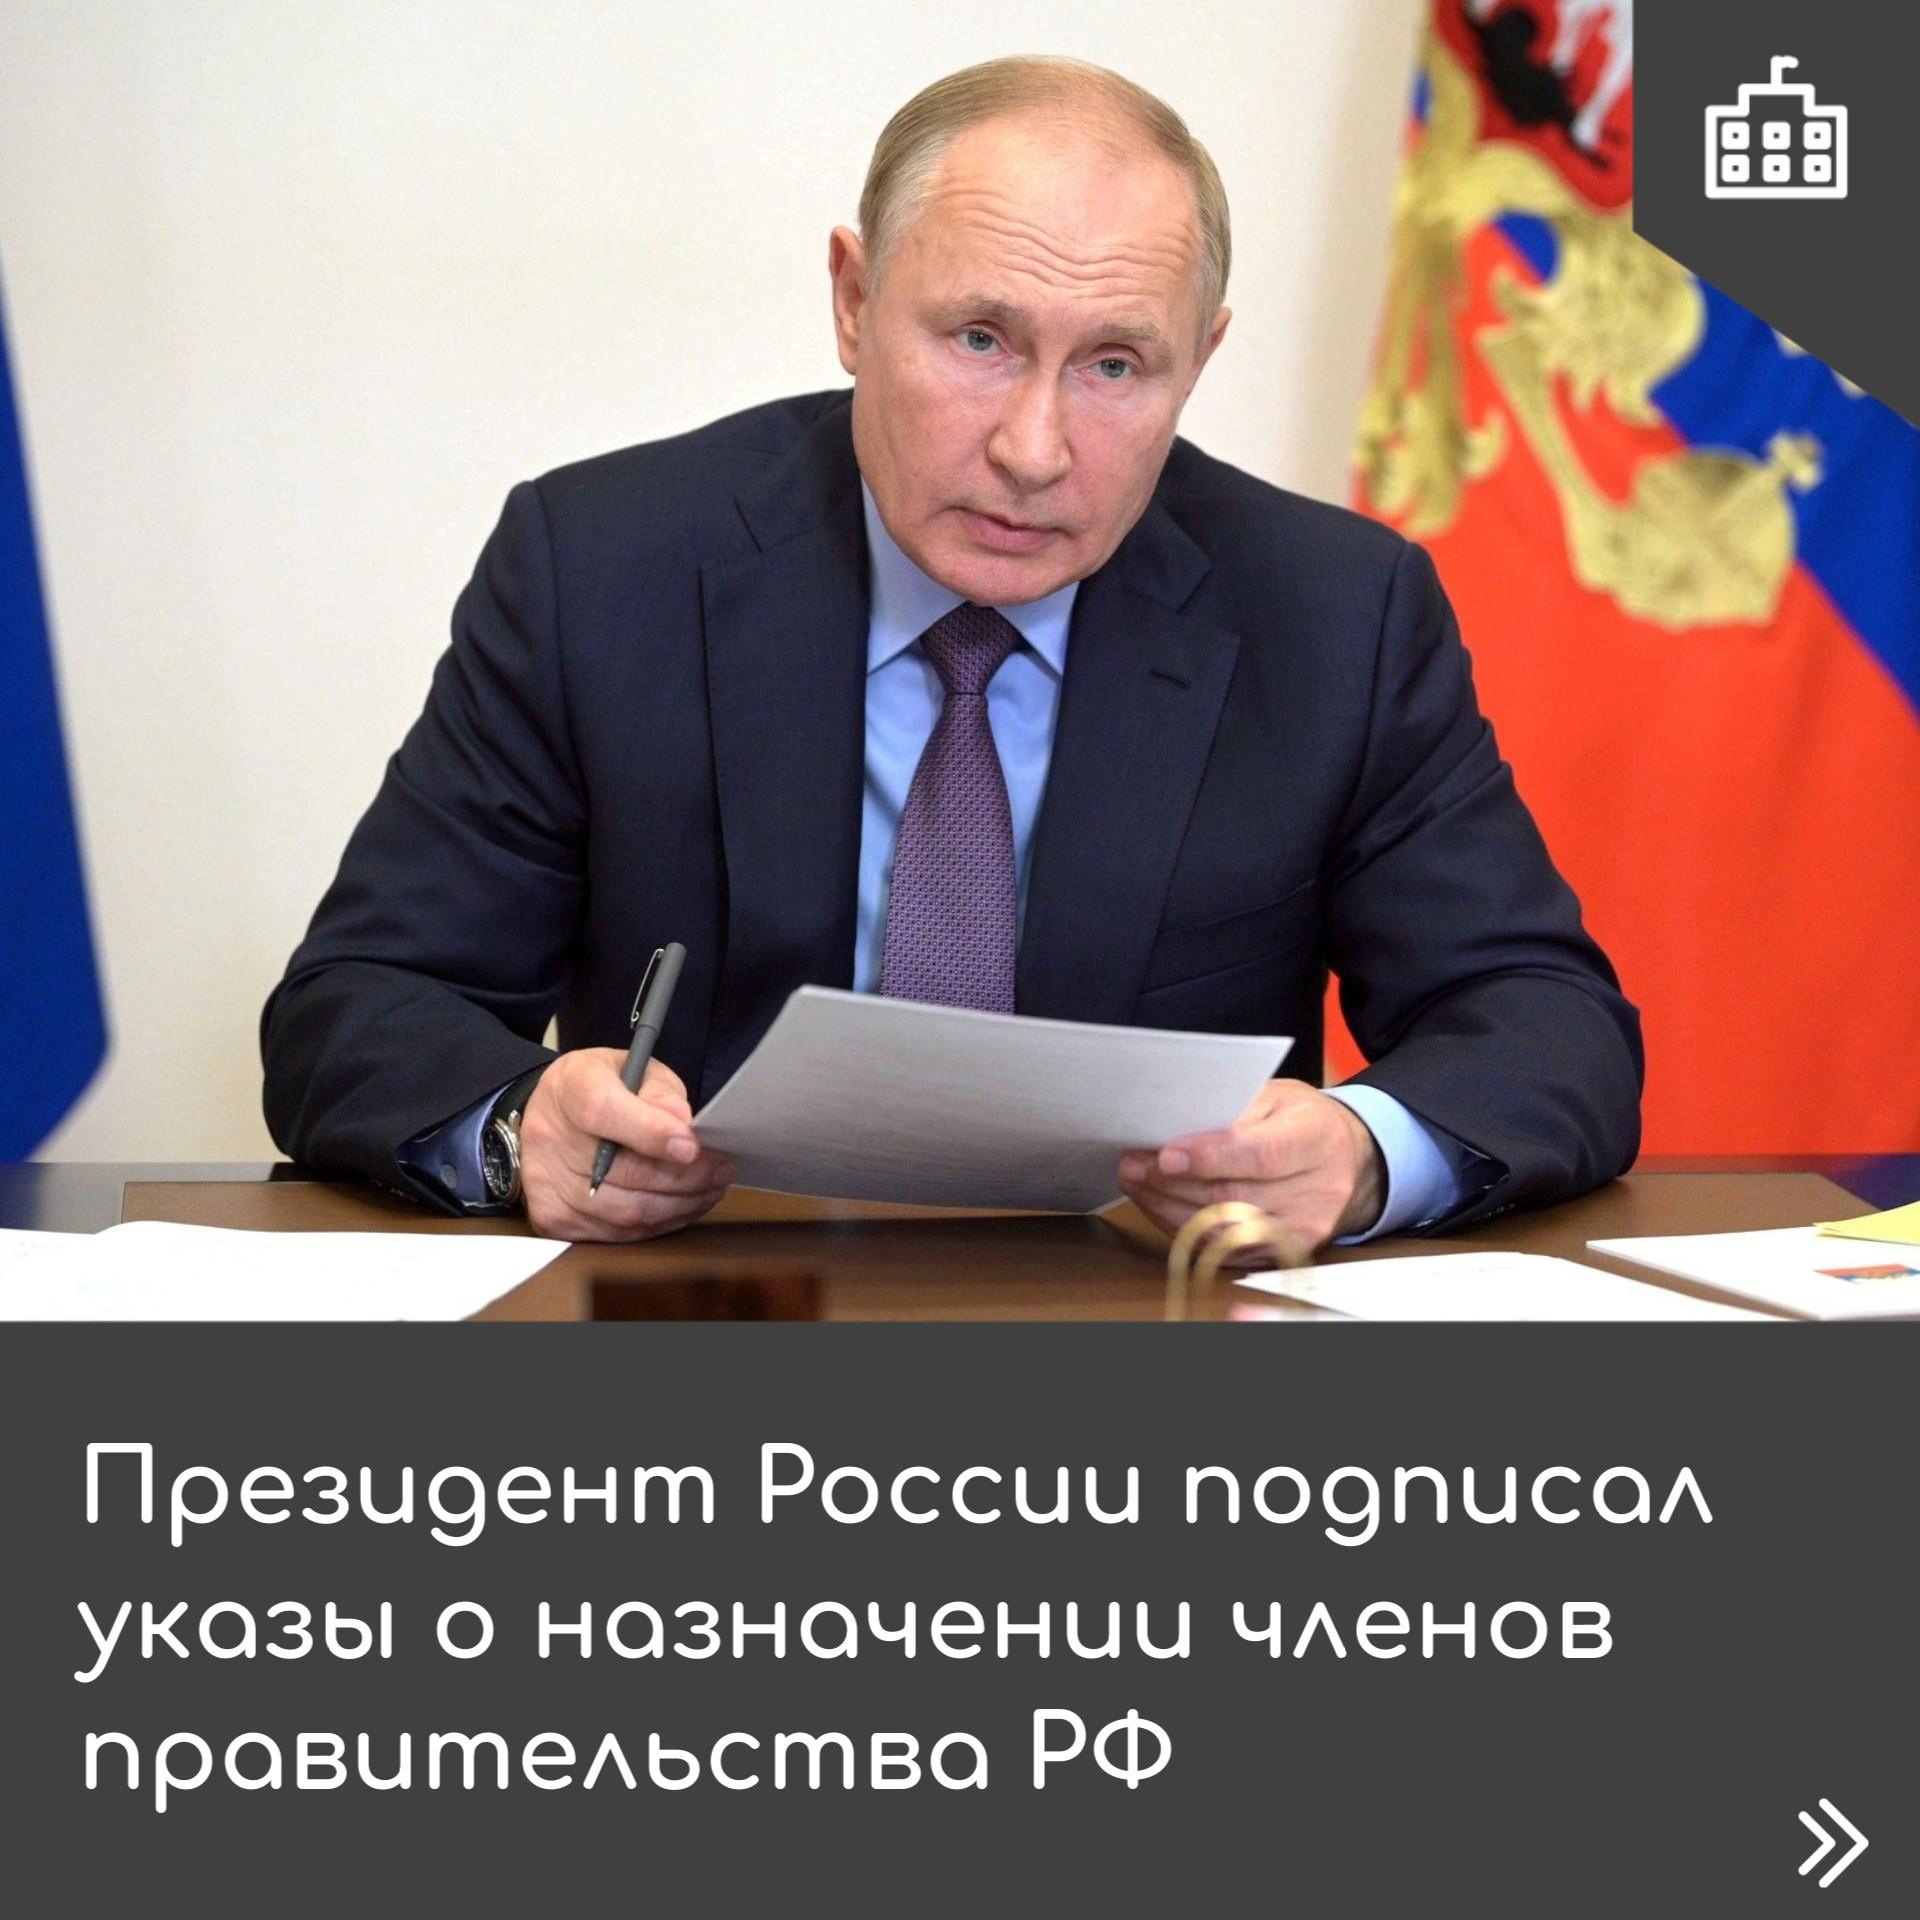 Президент утвердил новый состав правительства РФ.